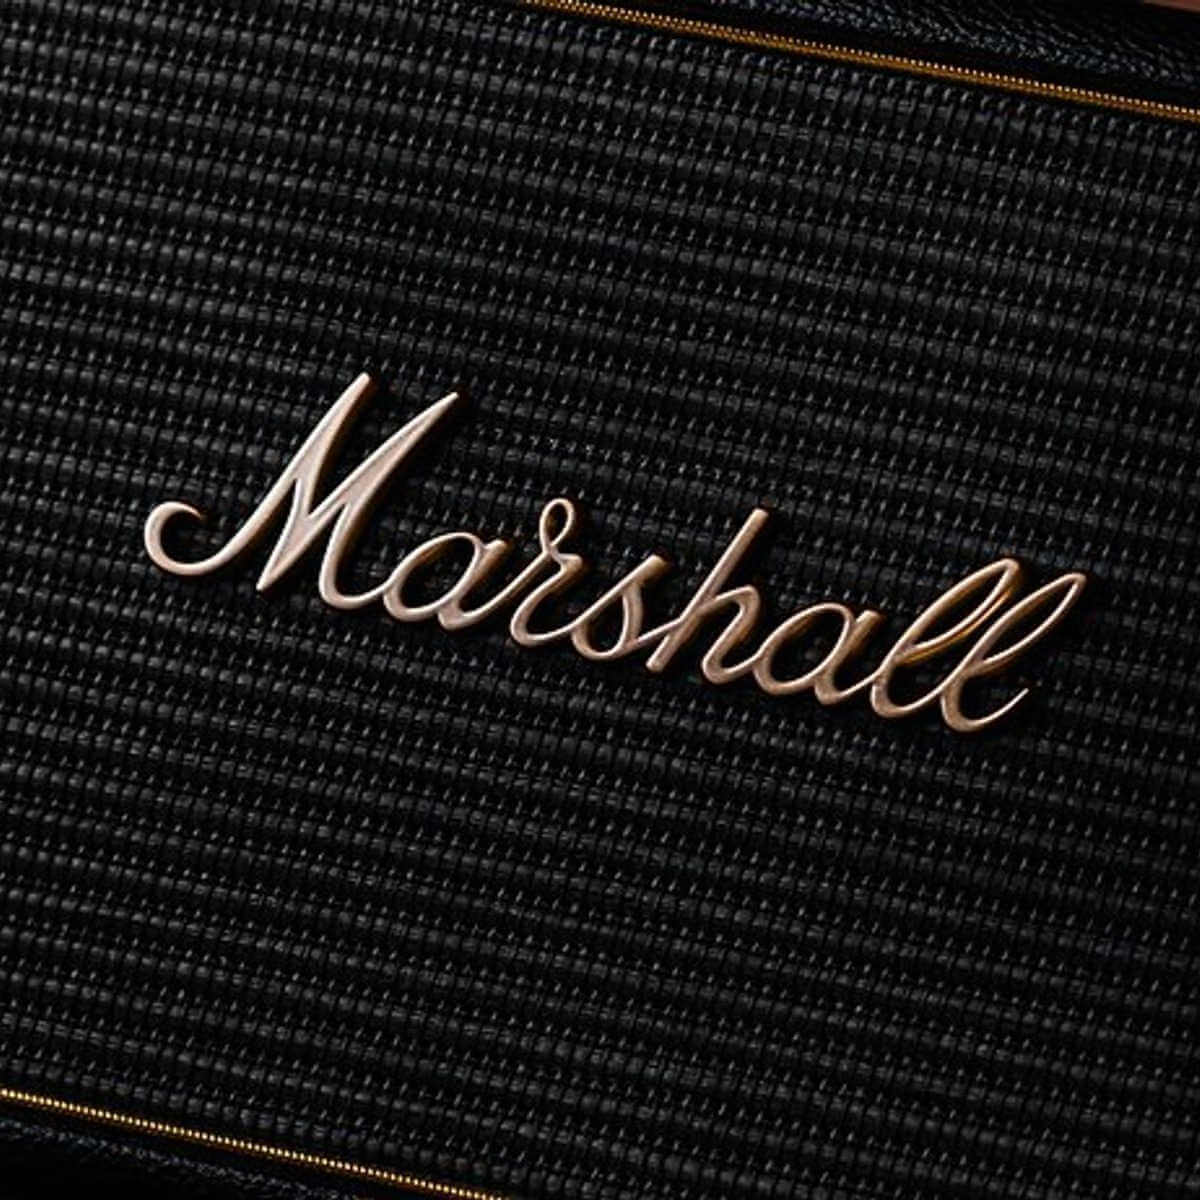 Black friday Marshall speakers - Marshall speakers